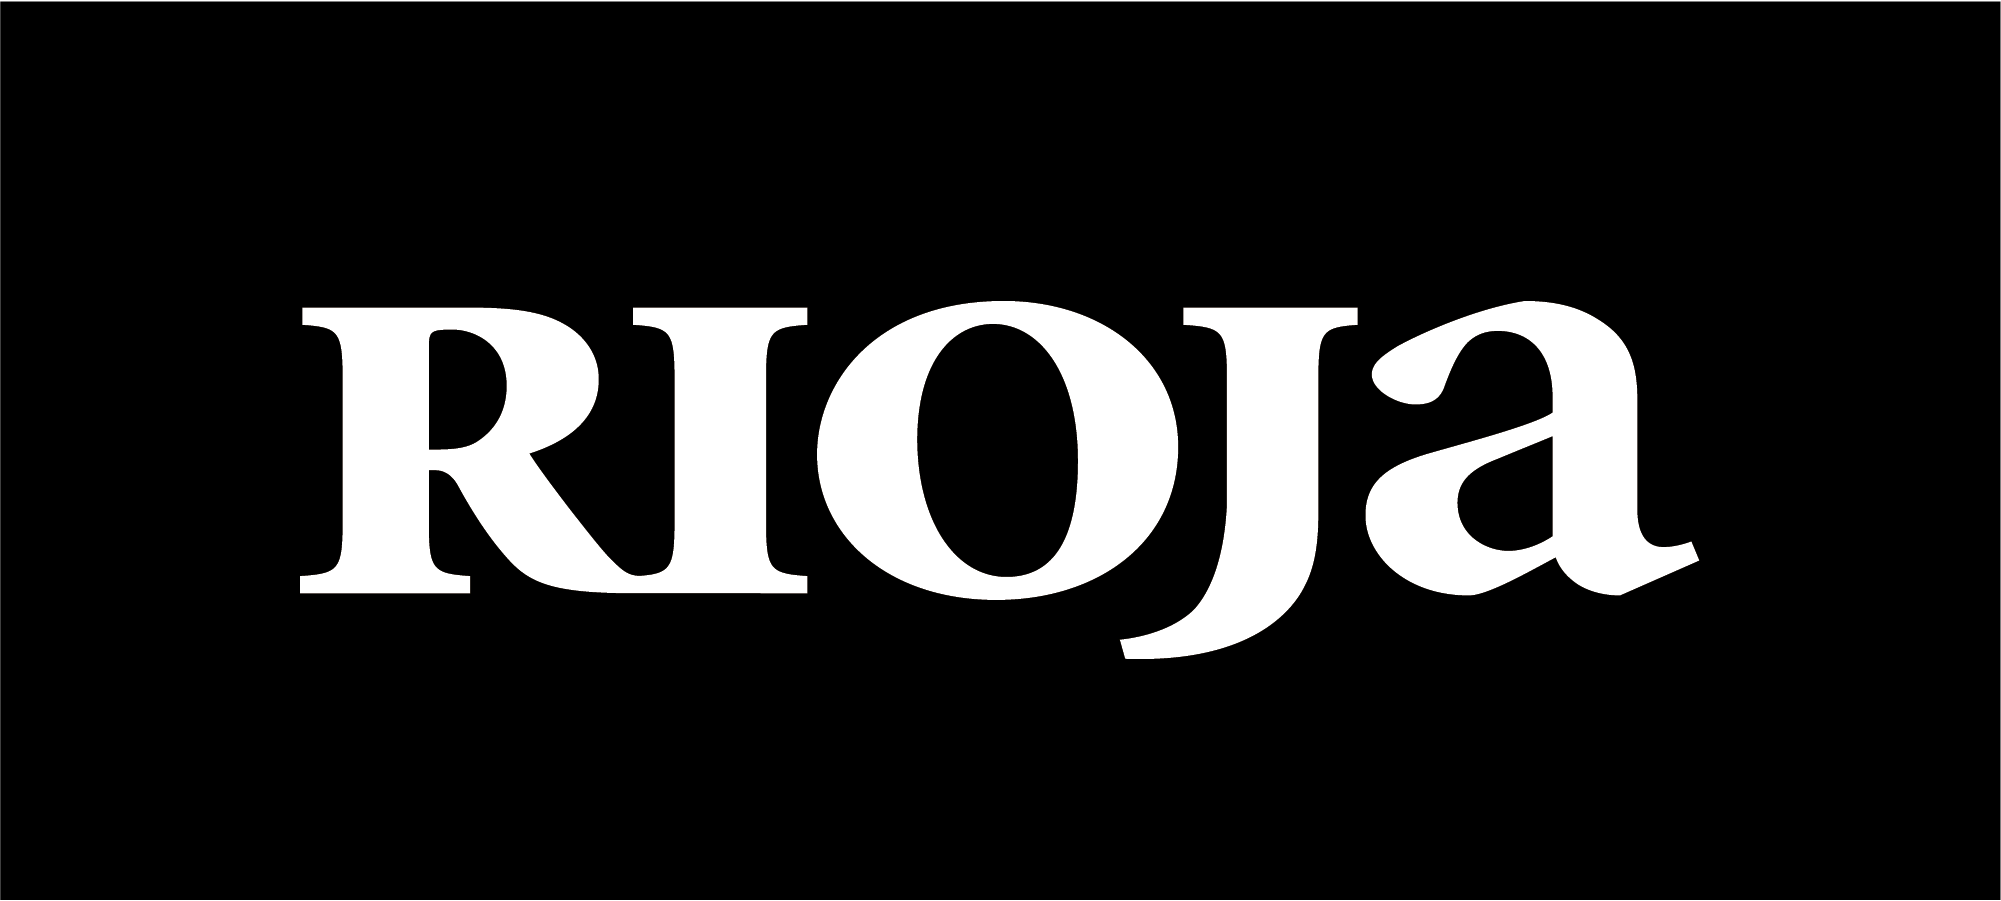 Offzielles Logo der Region Rioja